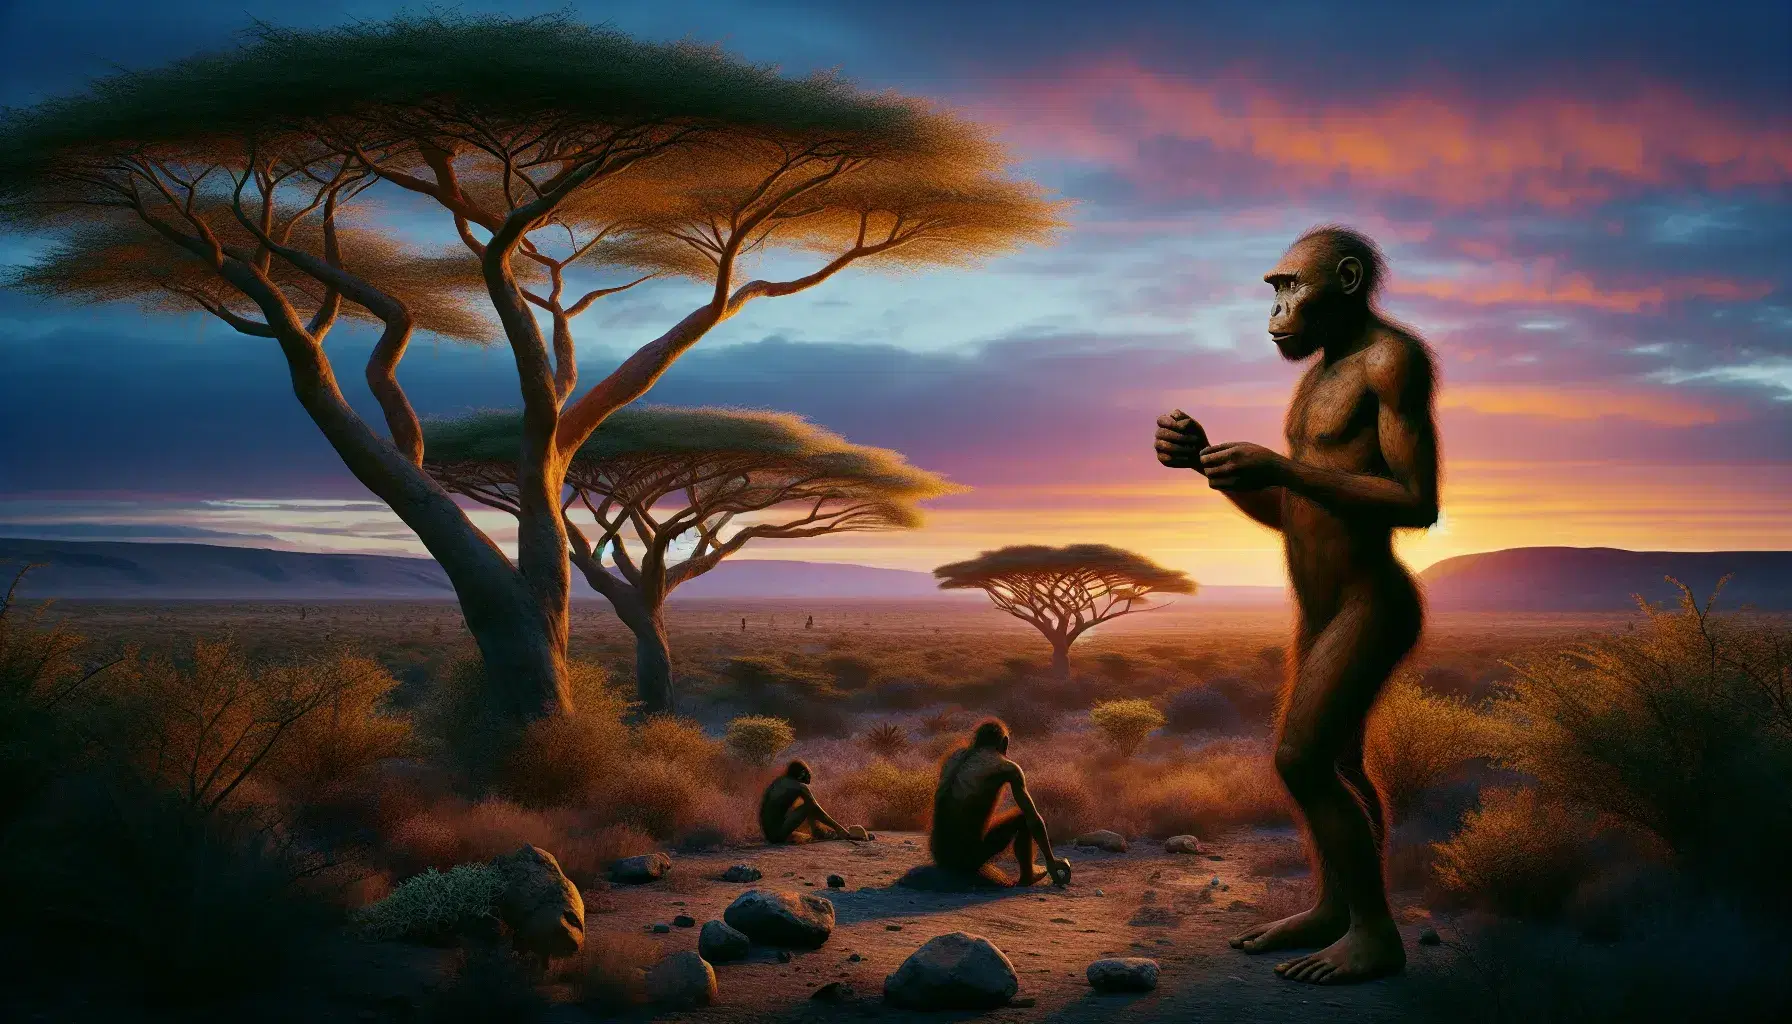 Reconstrucción realista de un paisaje africano al atardecer con un Homo ergaster sosteniendo una herramienta de piedra, acacias y montañas al fondo.